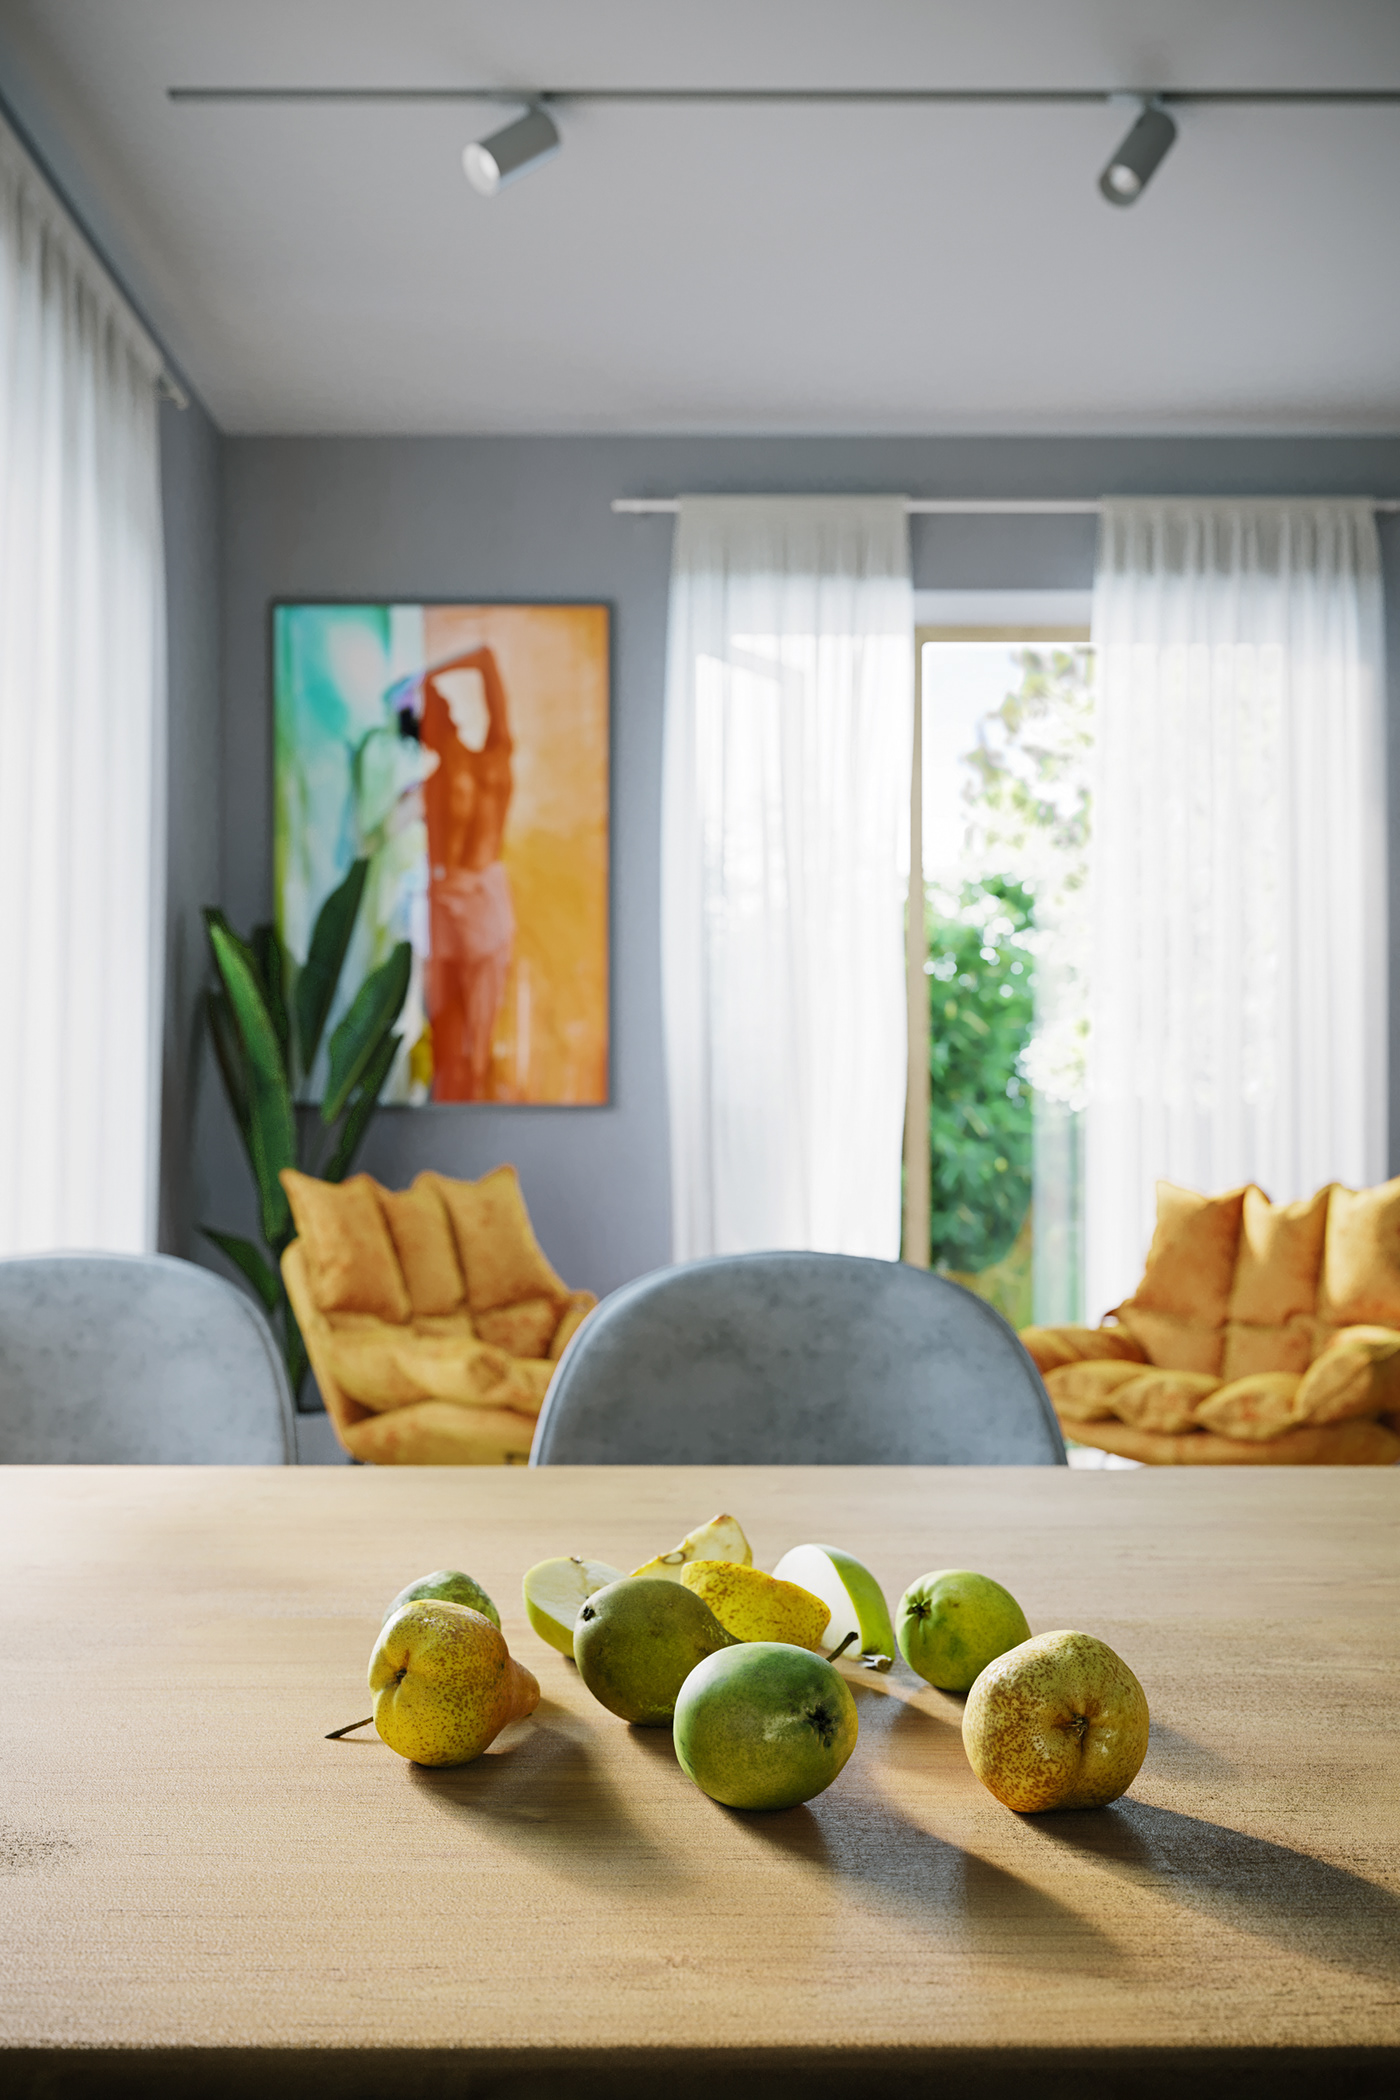 2DR studio architecture archviz CGI furniture Interior kitchen lights Render visualization